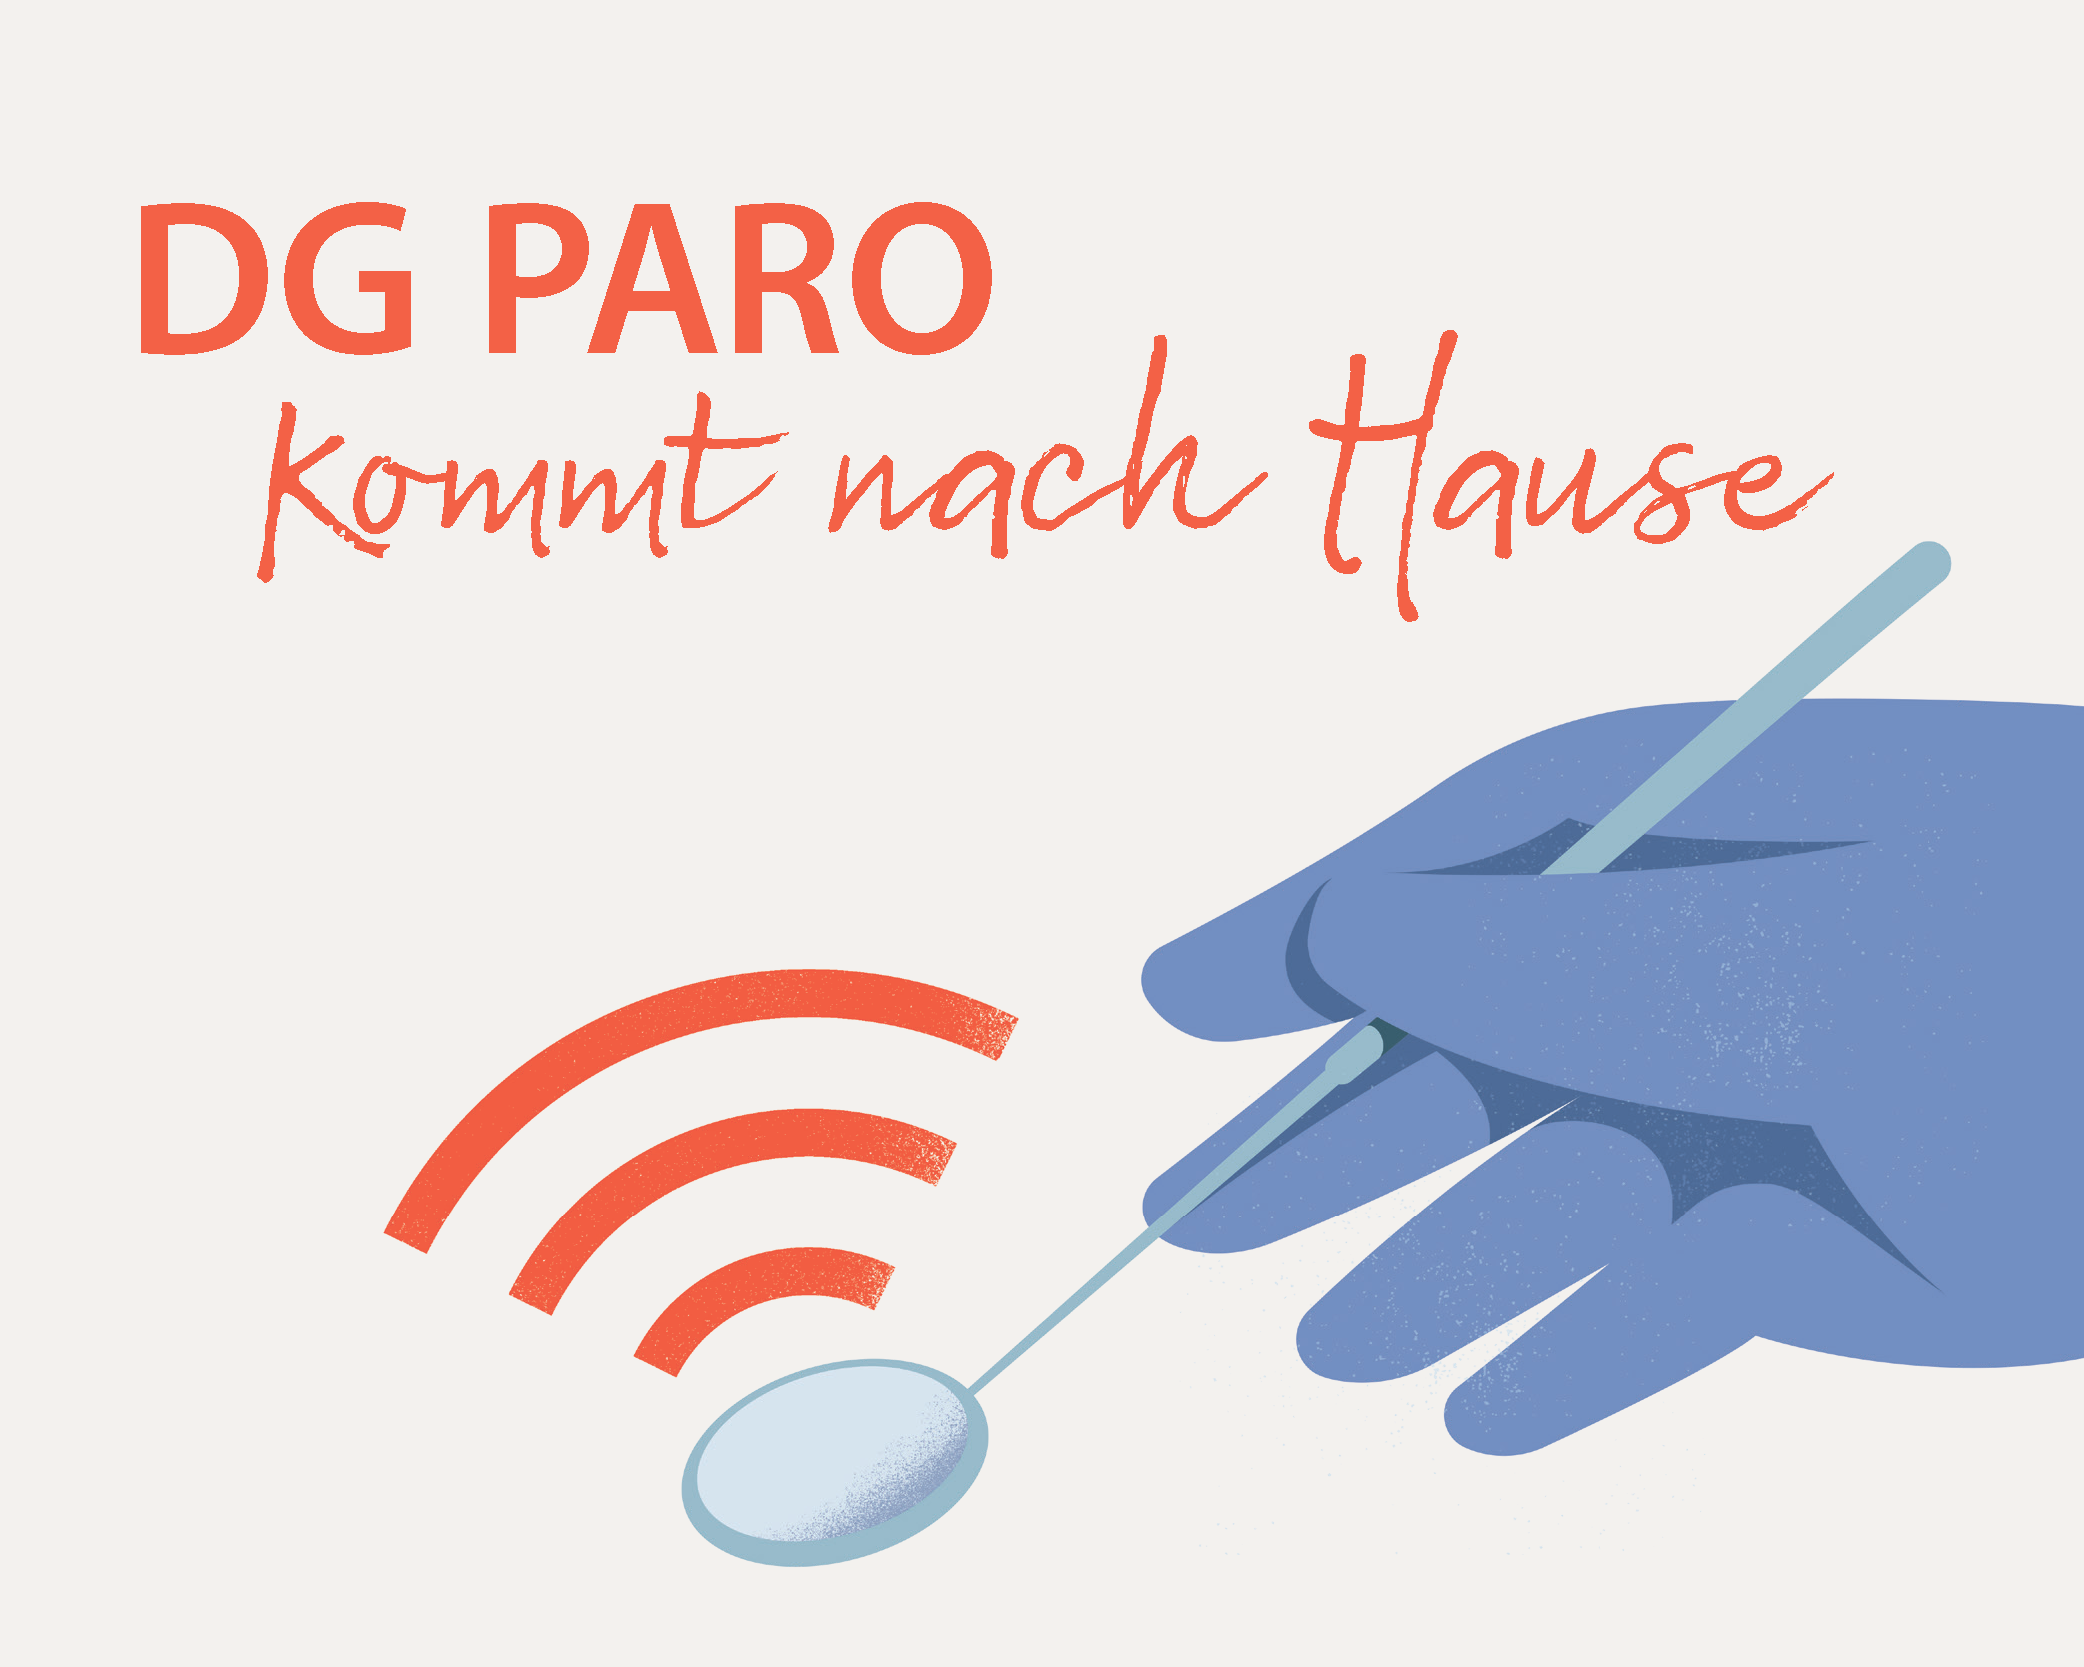 DG PARO kommt nach Hause: Key Visual Webinar-Reihe